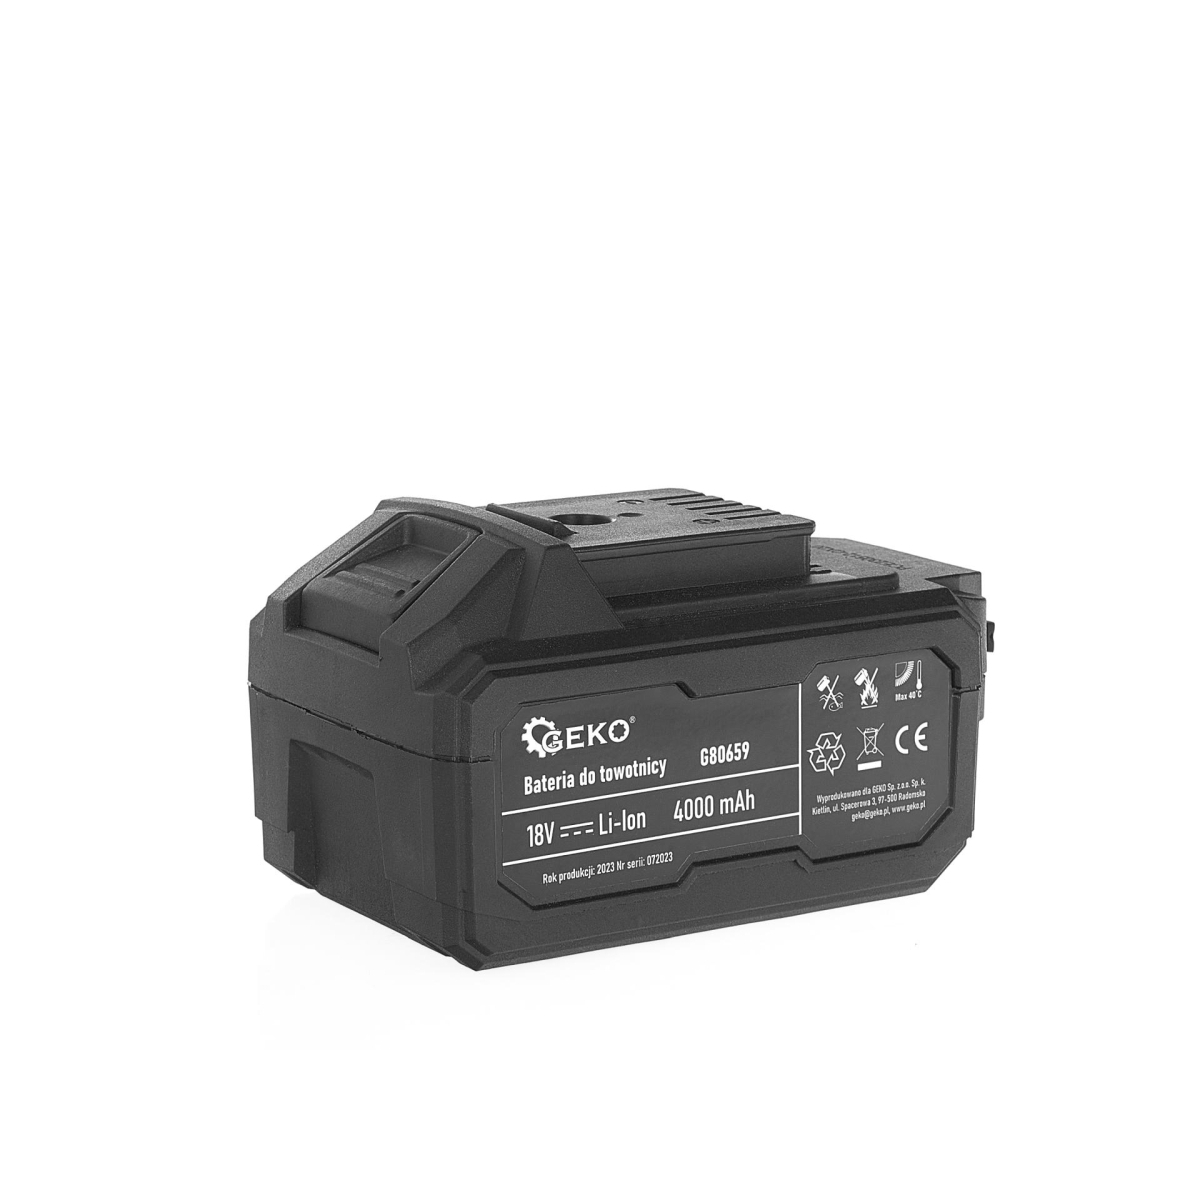 GEKO Baterie pro tažné zařízení G80657 - 4,0Ah 18V (5)